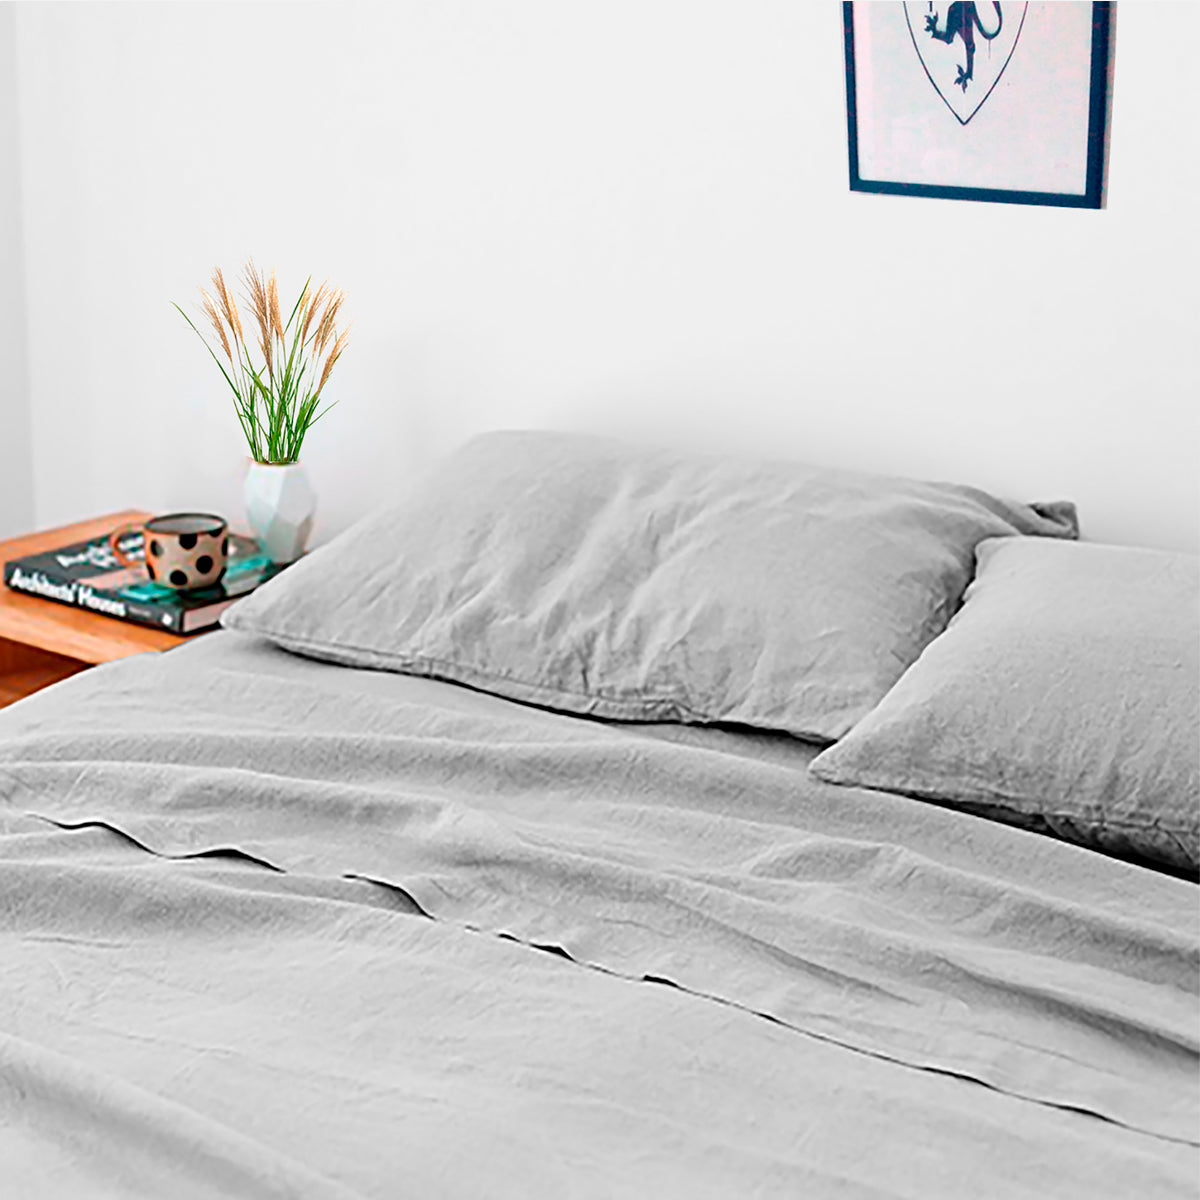 Hemp Copenhagen Co. Bed linen 100% Hemp Standard, White or Natural Grey